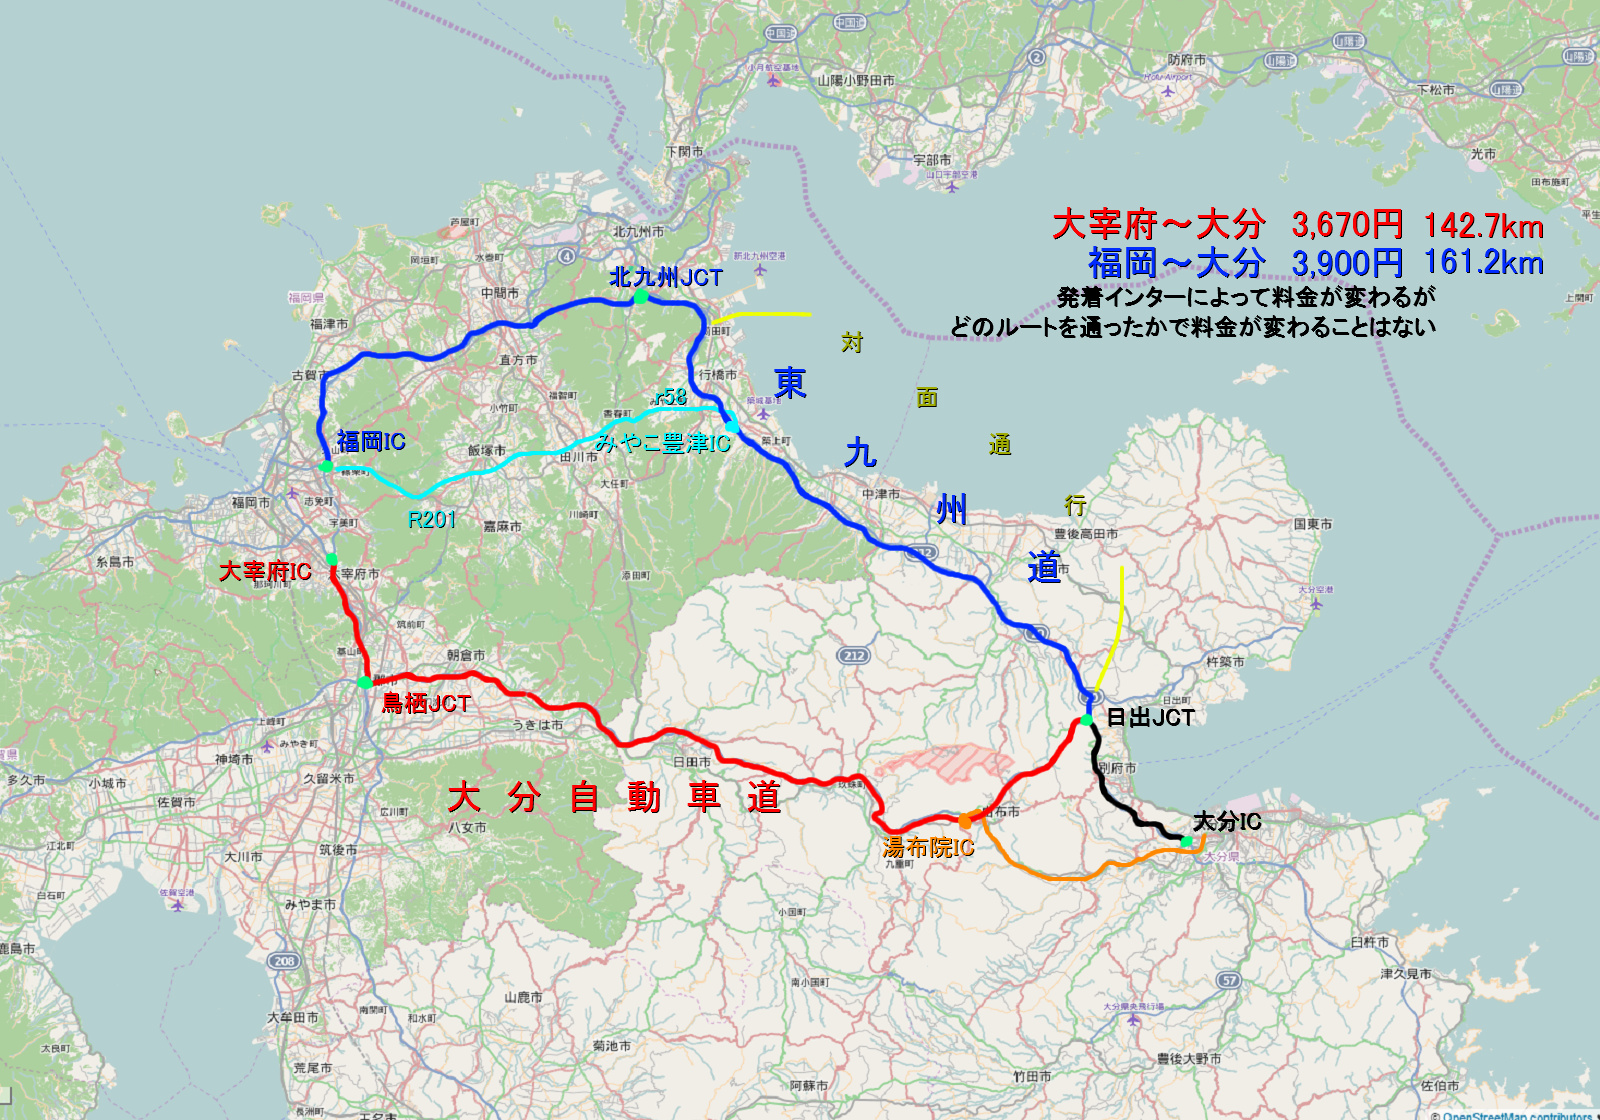 Rcp193の道路についてのブログ 道路以外もあります 福岡 大分 大分自動車道経由と 東九州自動車道経由 どちらのほうが早く着くのか